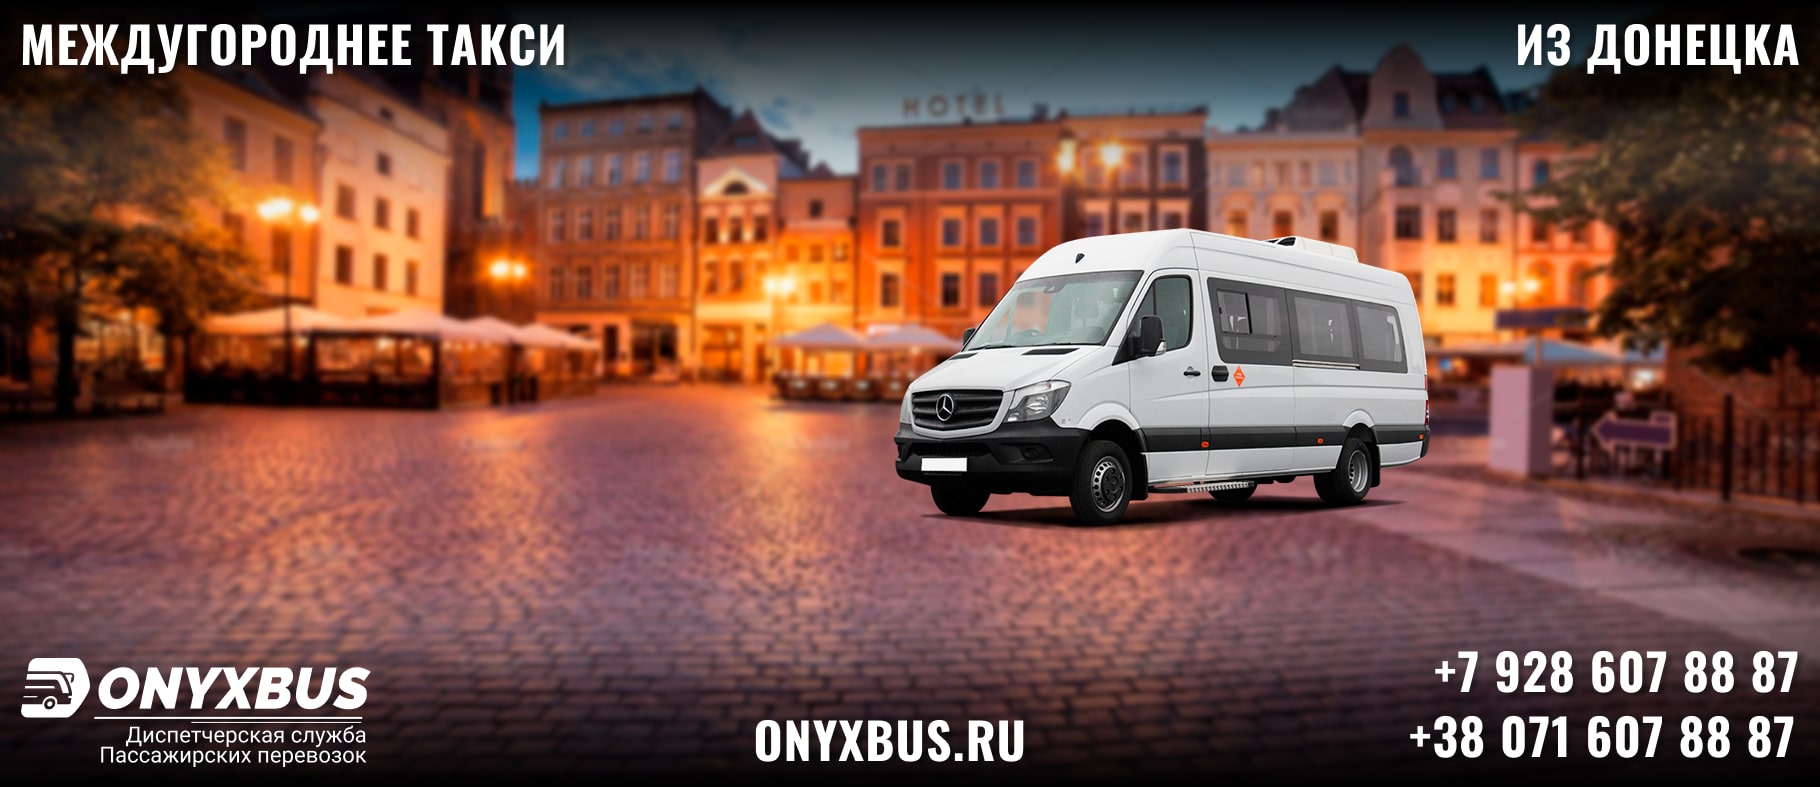 Заказ <br>Микроавтобуса Новошахтинск - Донецк